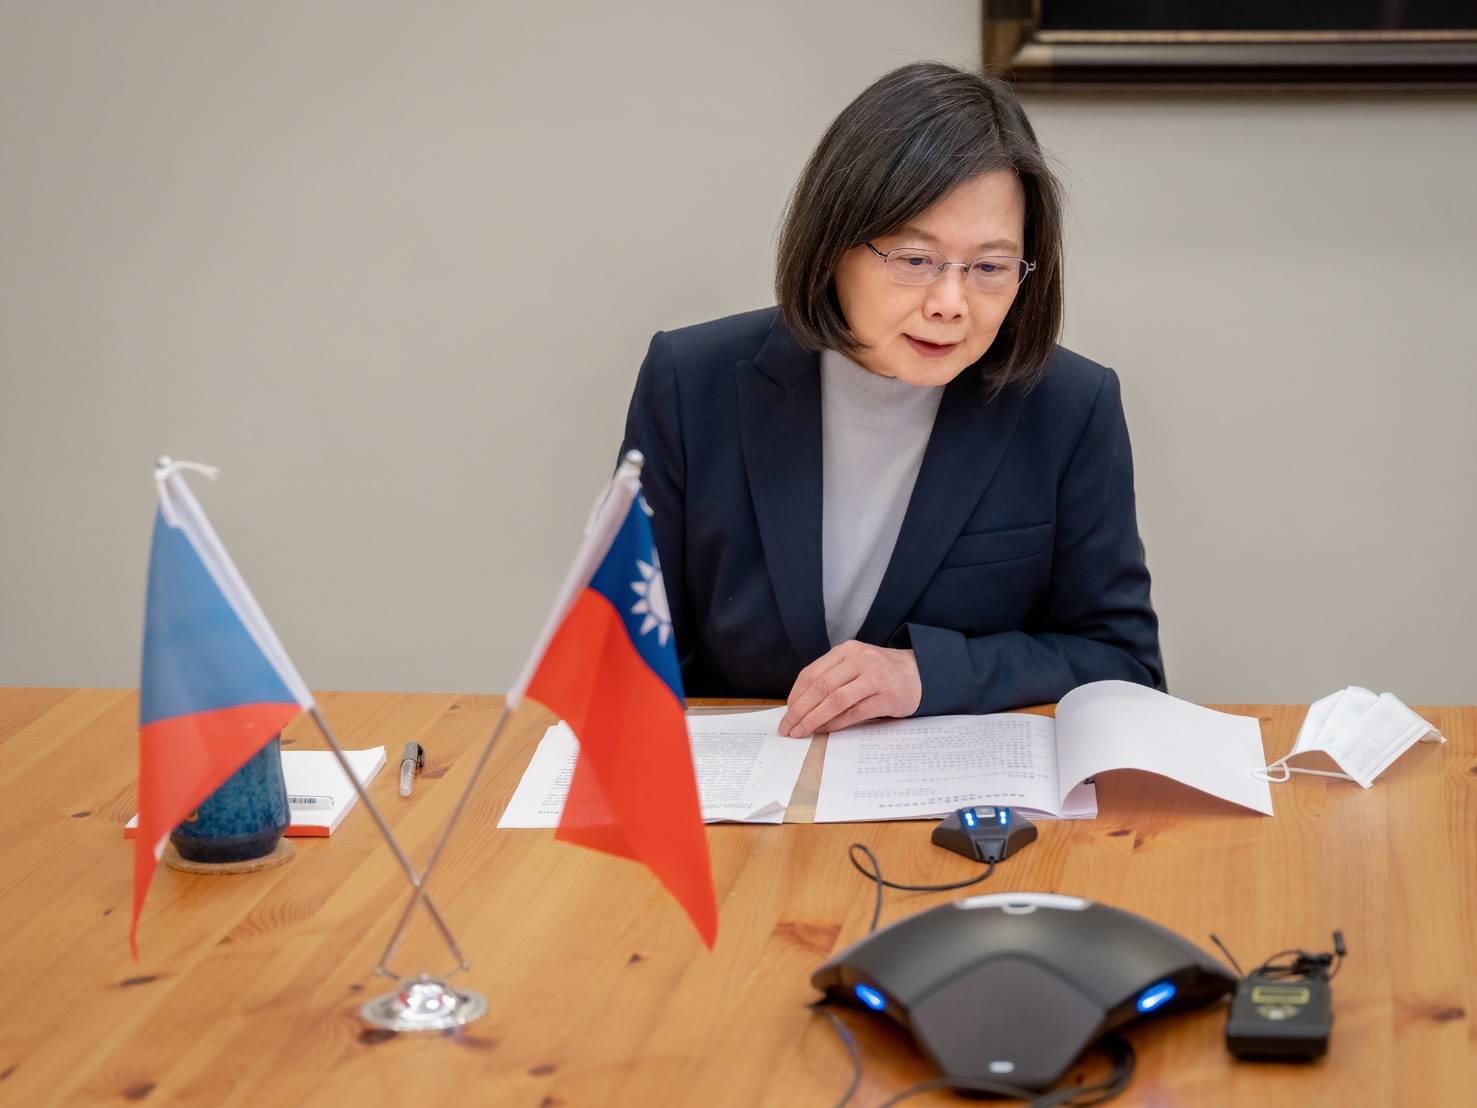 蔡英文與捷克準總統通話 帕維爾讚台灣「可信賴夥伴」